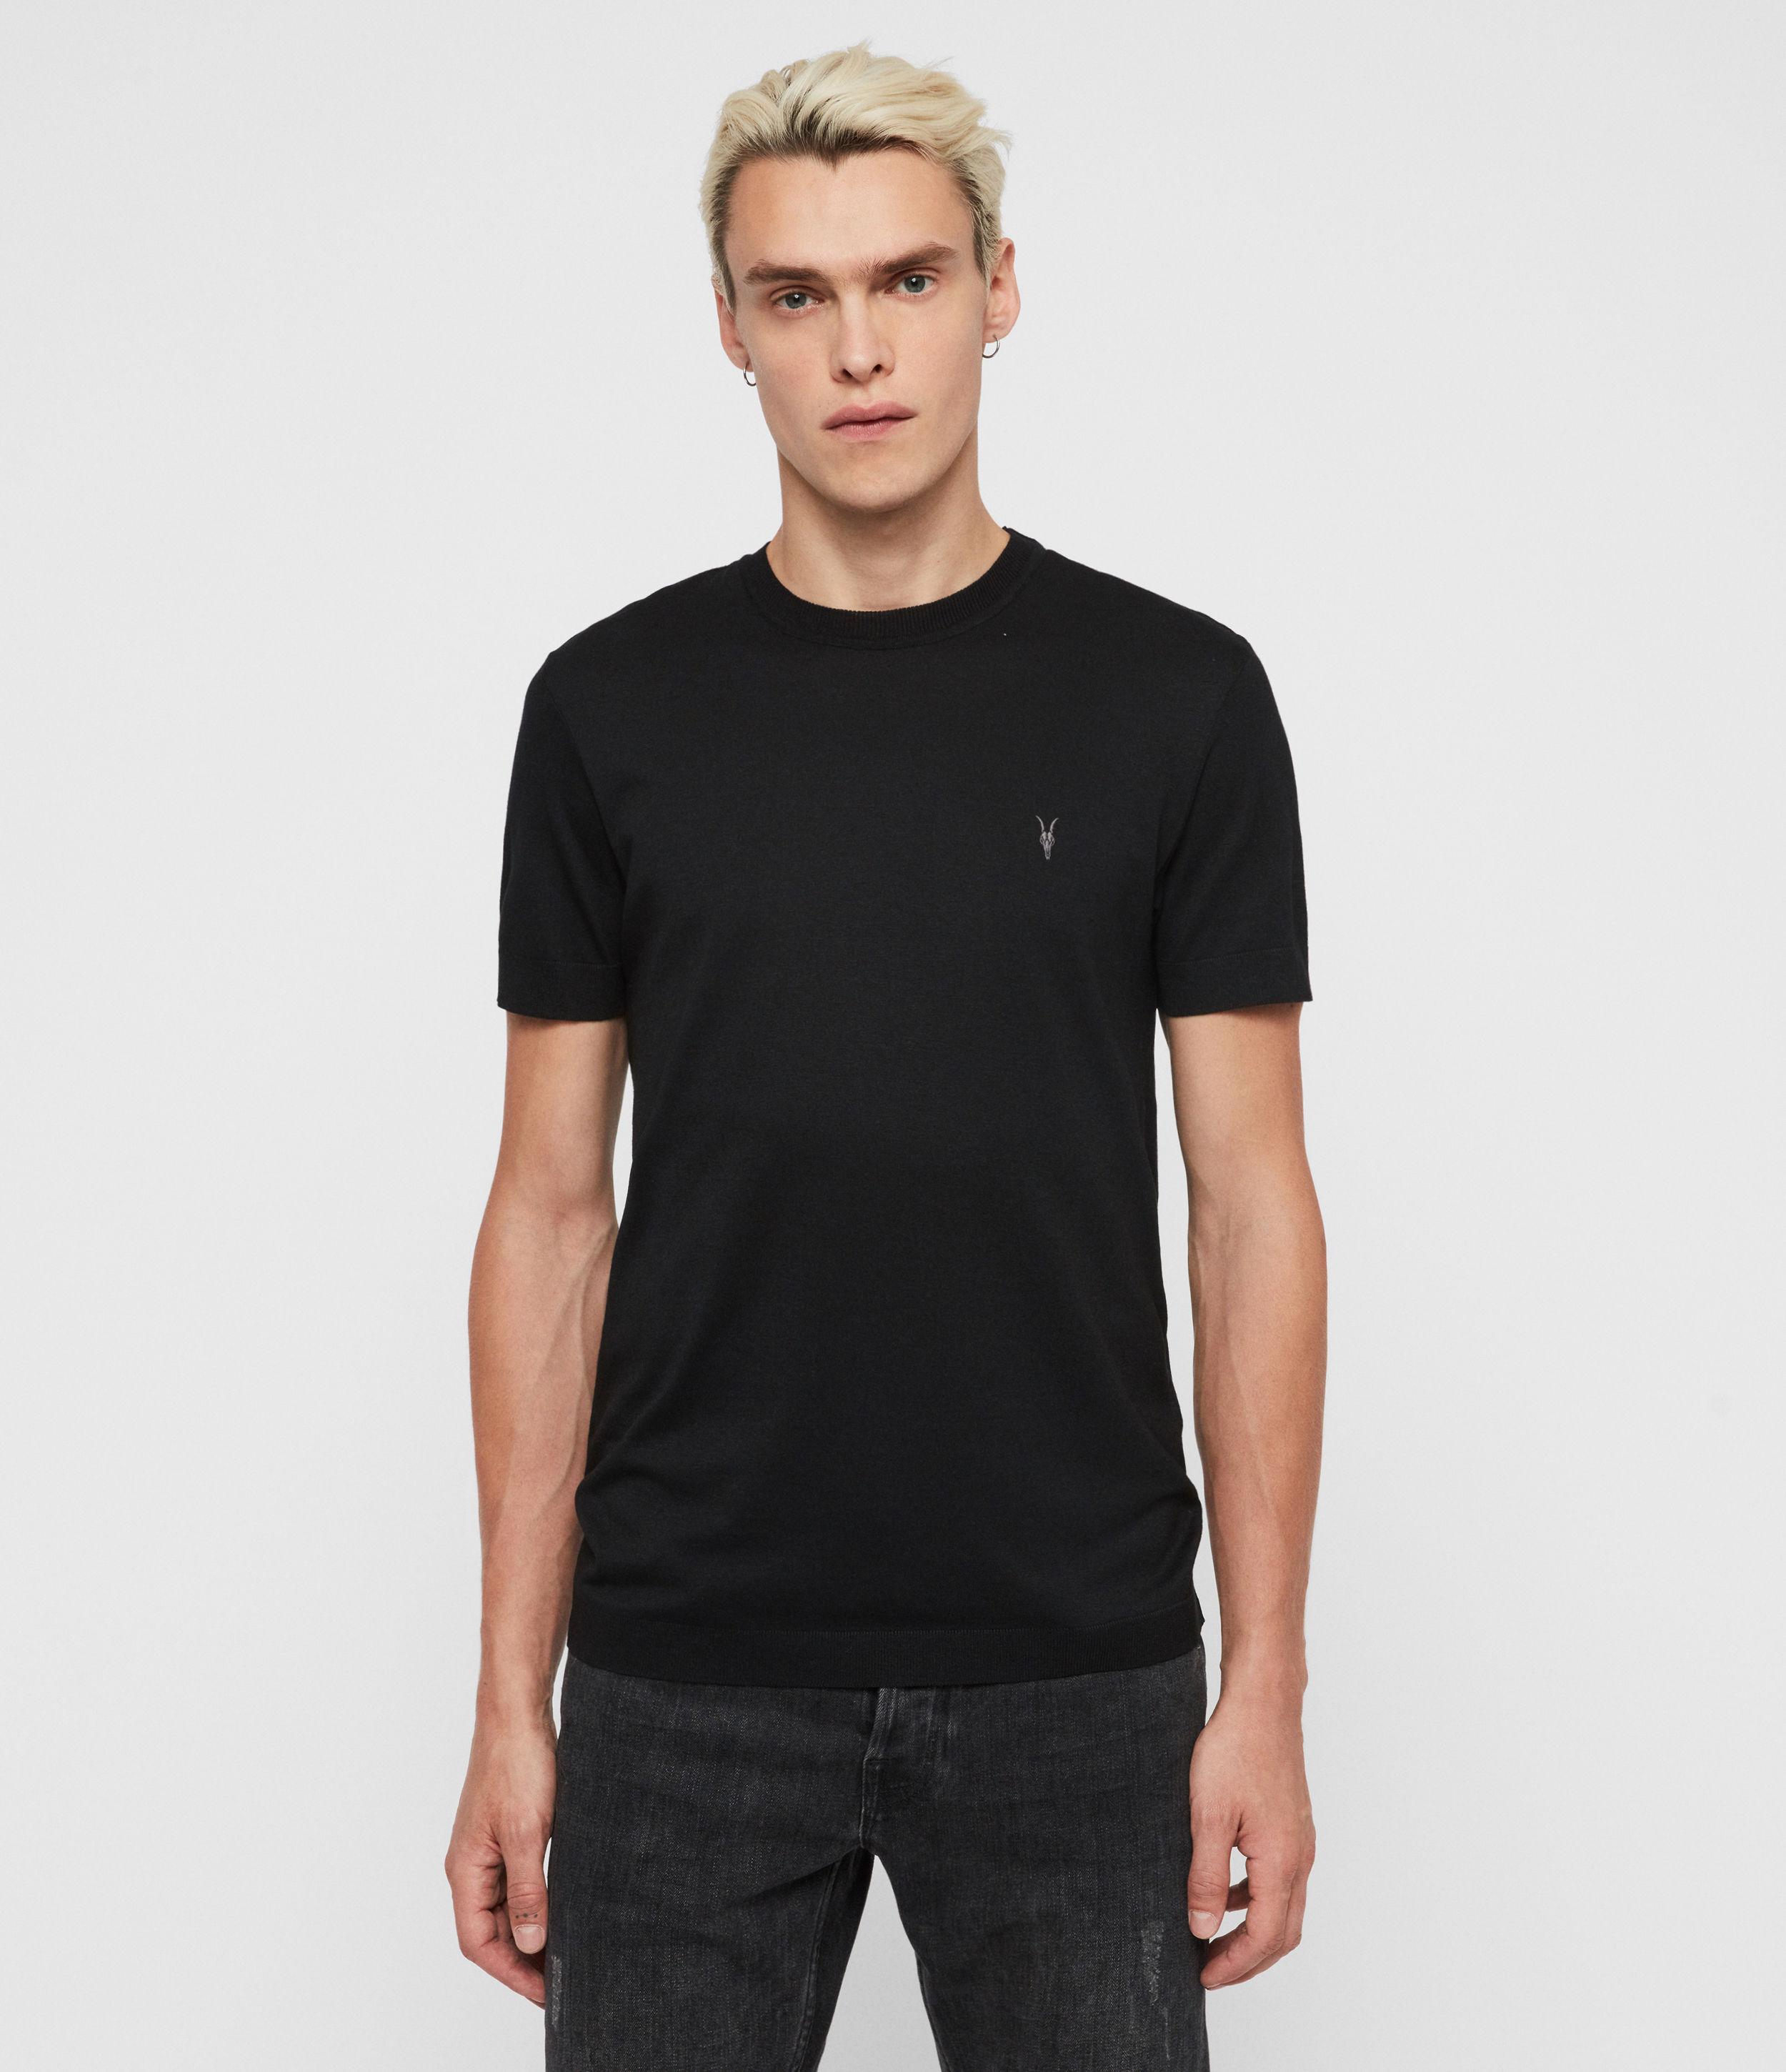 AllSaints Cotton Tonic Crew T-shirt in Black for Men - Lyst